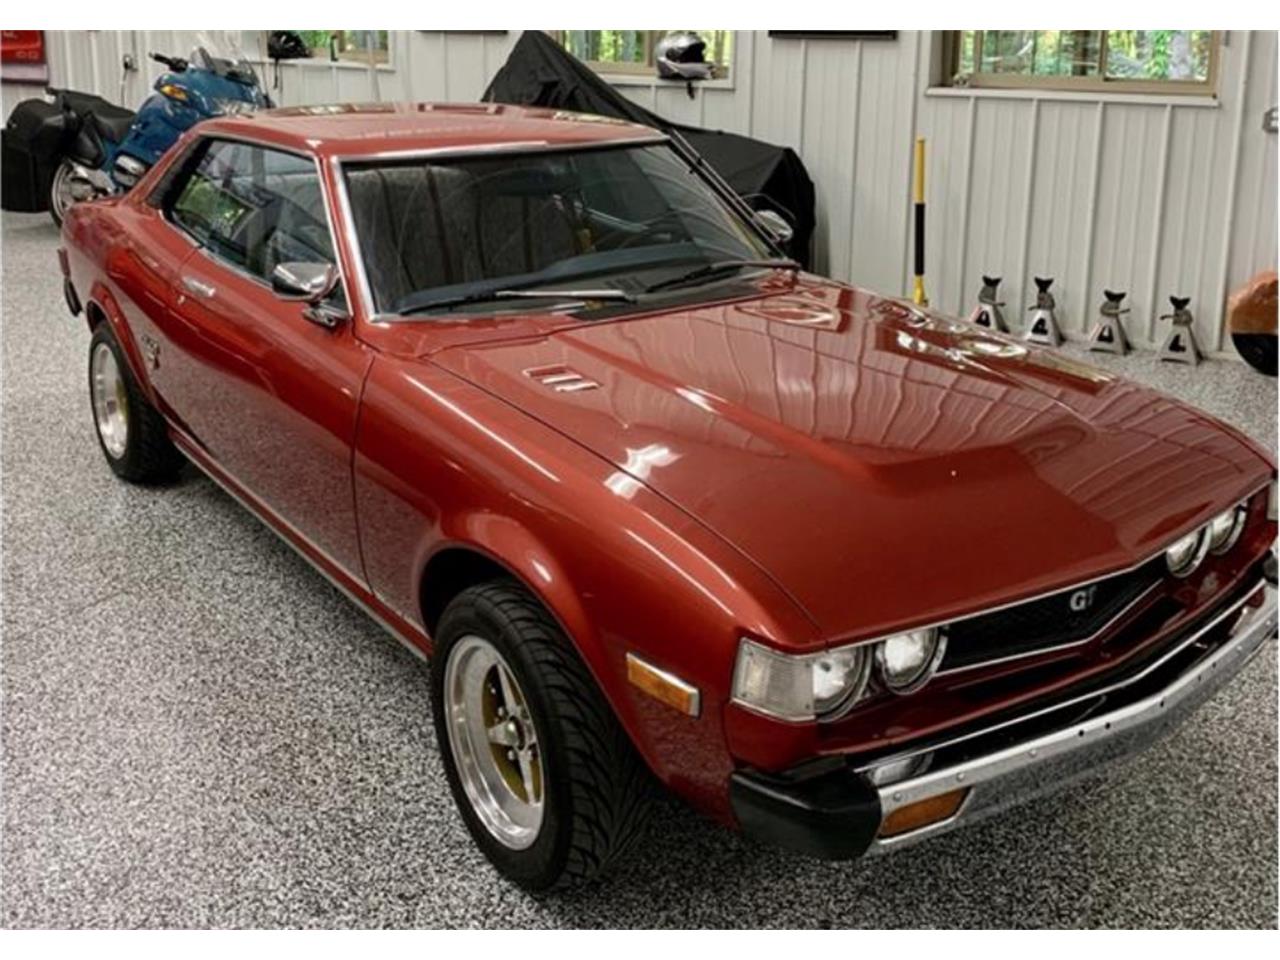 1976 Toyota Celica For Sale Classiccars Com Cc